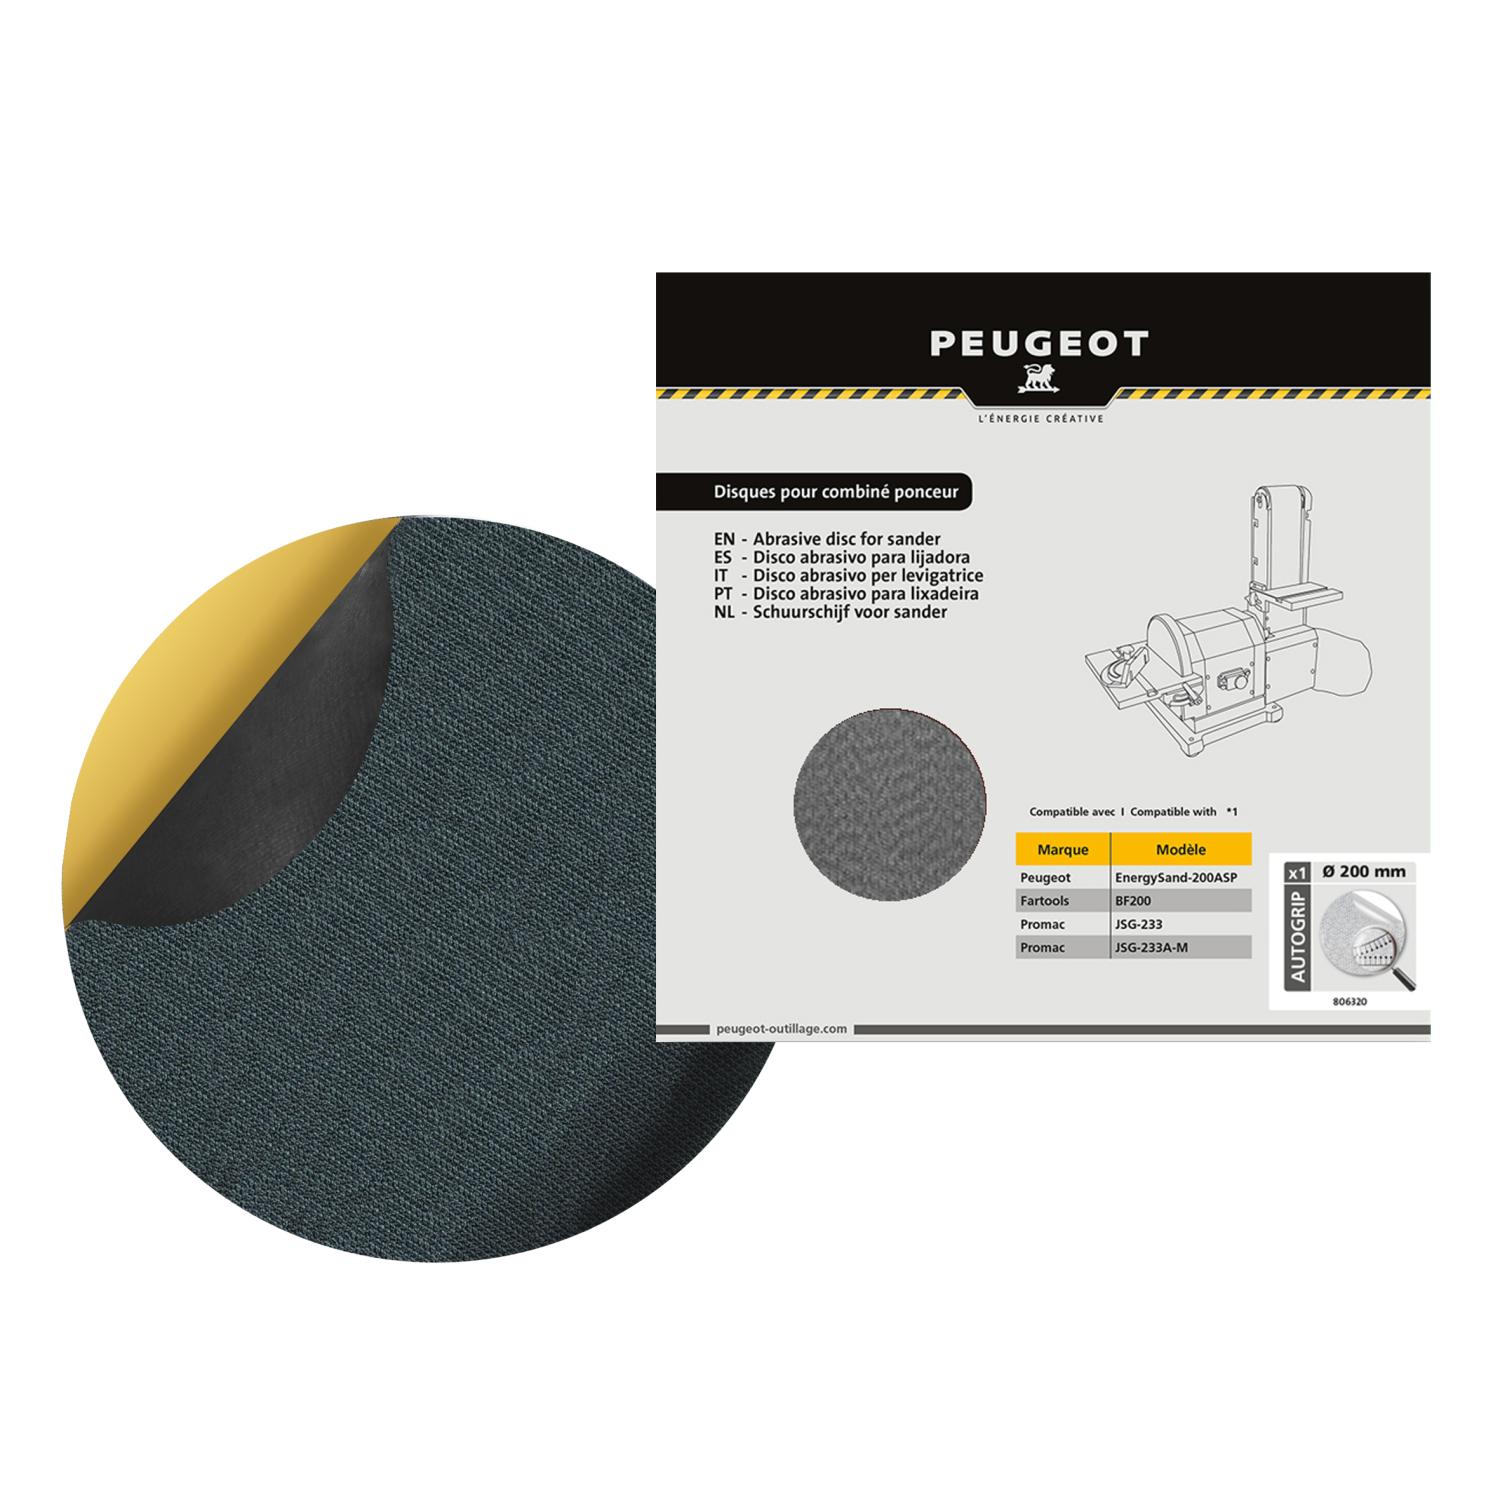 PEUGEOT - Support autocollant ø200 mm pour disques velcro